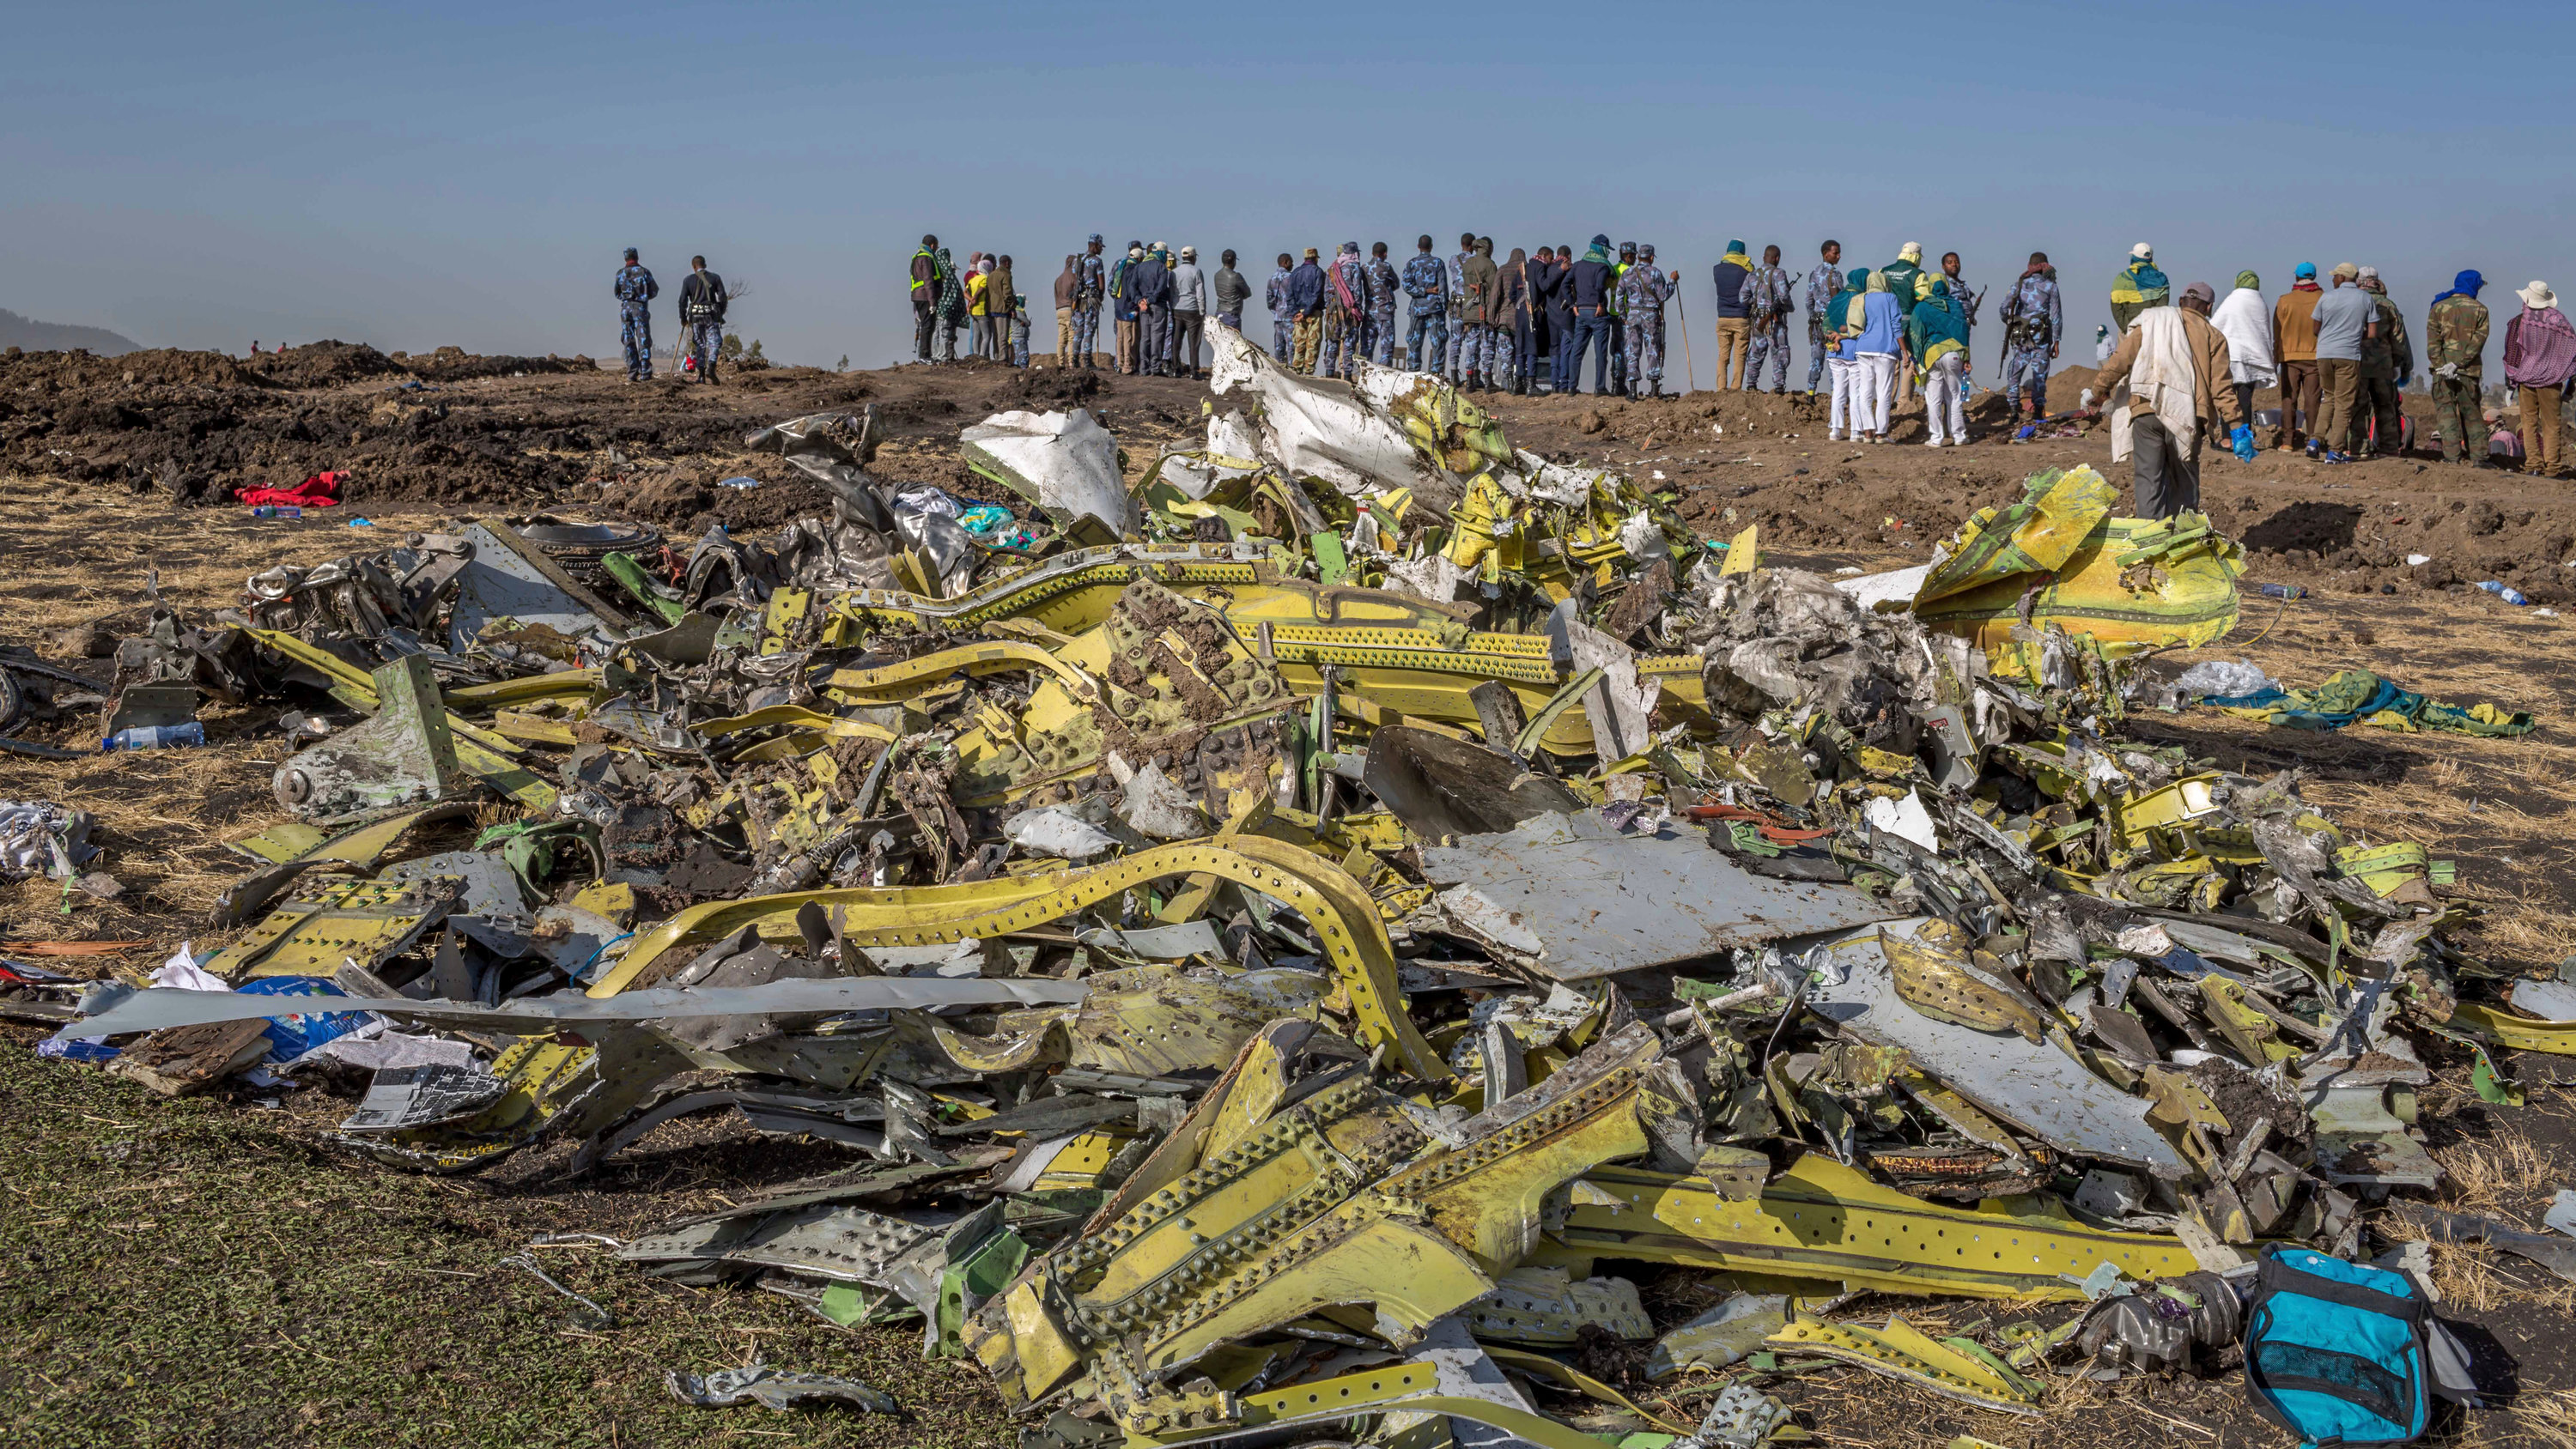 A PICTURE OF THE ETHIOPIAN 737 MAX DEBRIS AT CRASH SITE